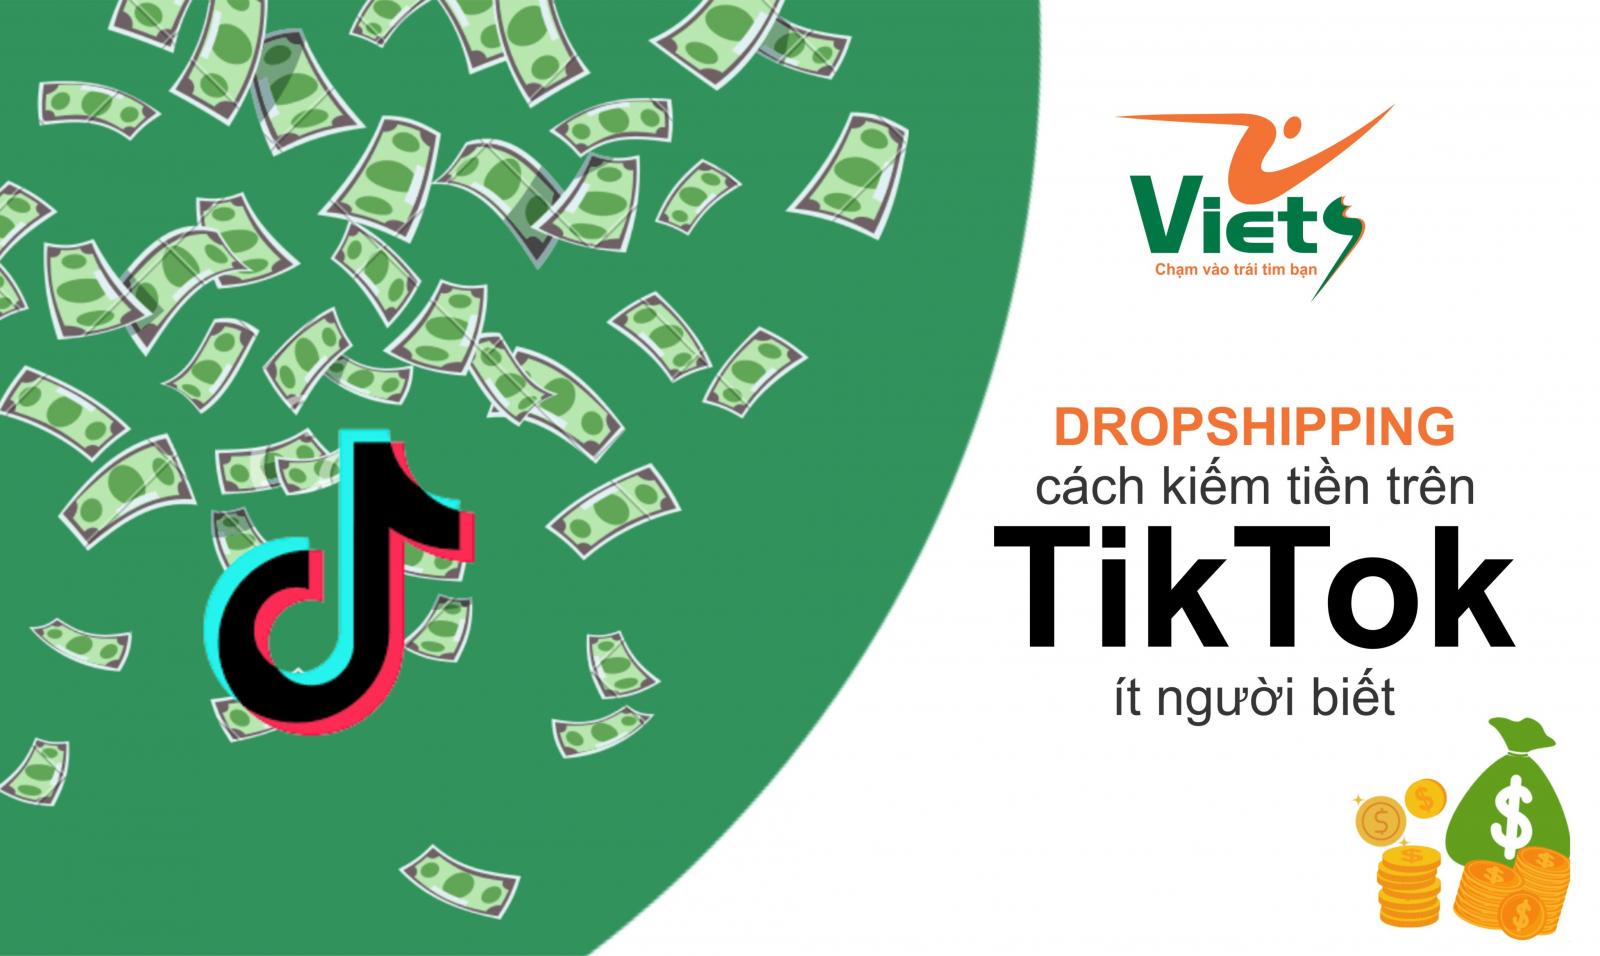 hướng dẫn cách kiếm tiền trên tiktok - Viets Media